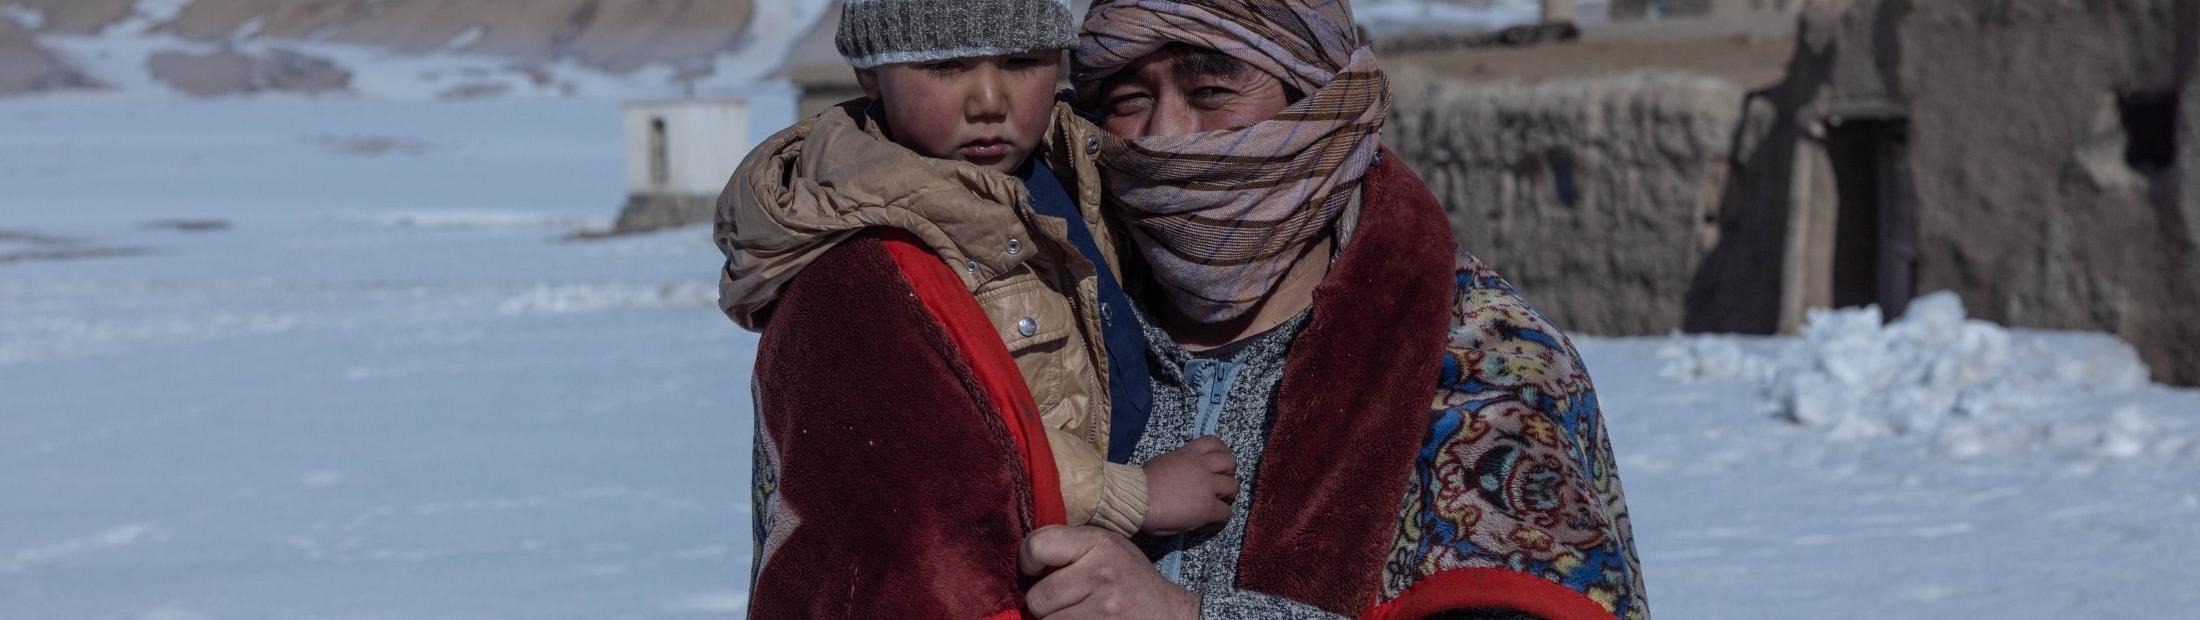 Nueva amenaza para los refugiados: el frío